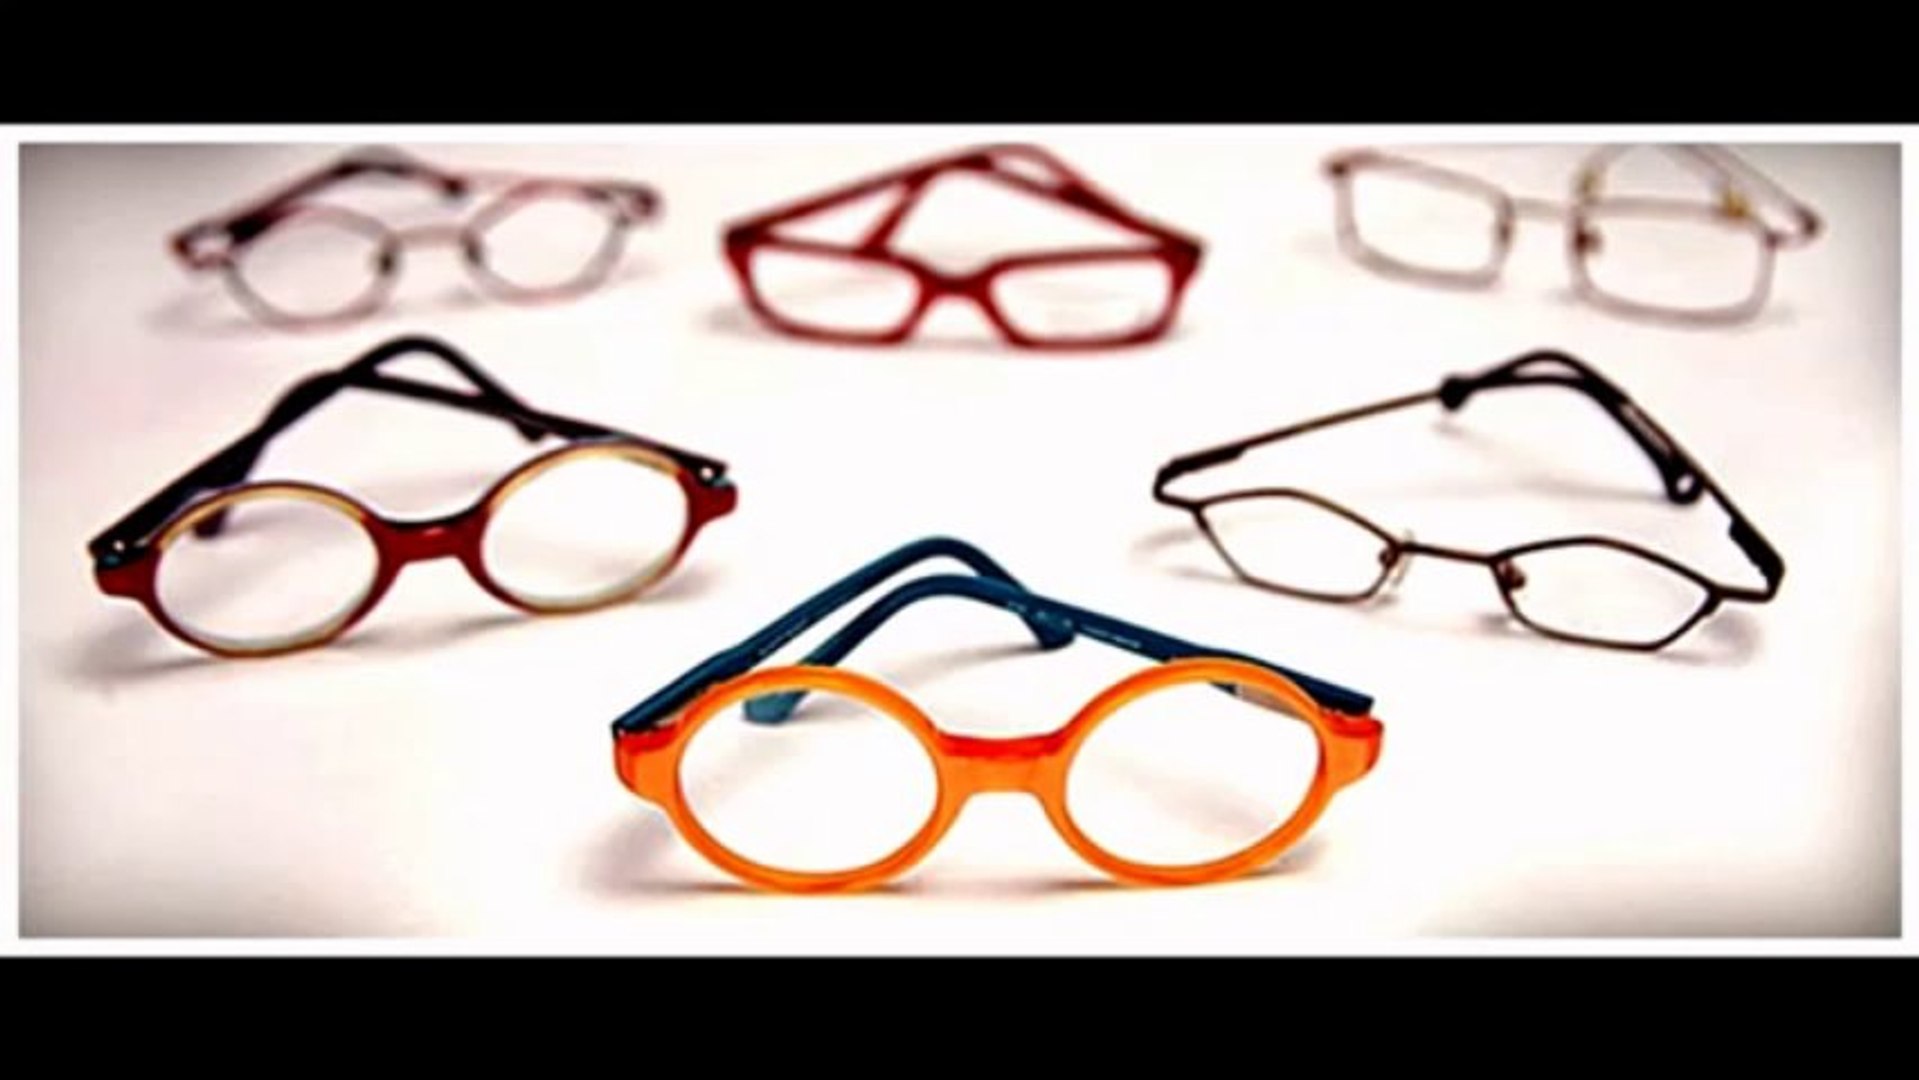 Kids Eyeglasses Frames - Spectacles for Kids - Buy Kids Glasses Online at Shopglasses.co.in